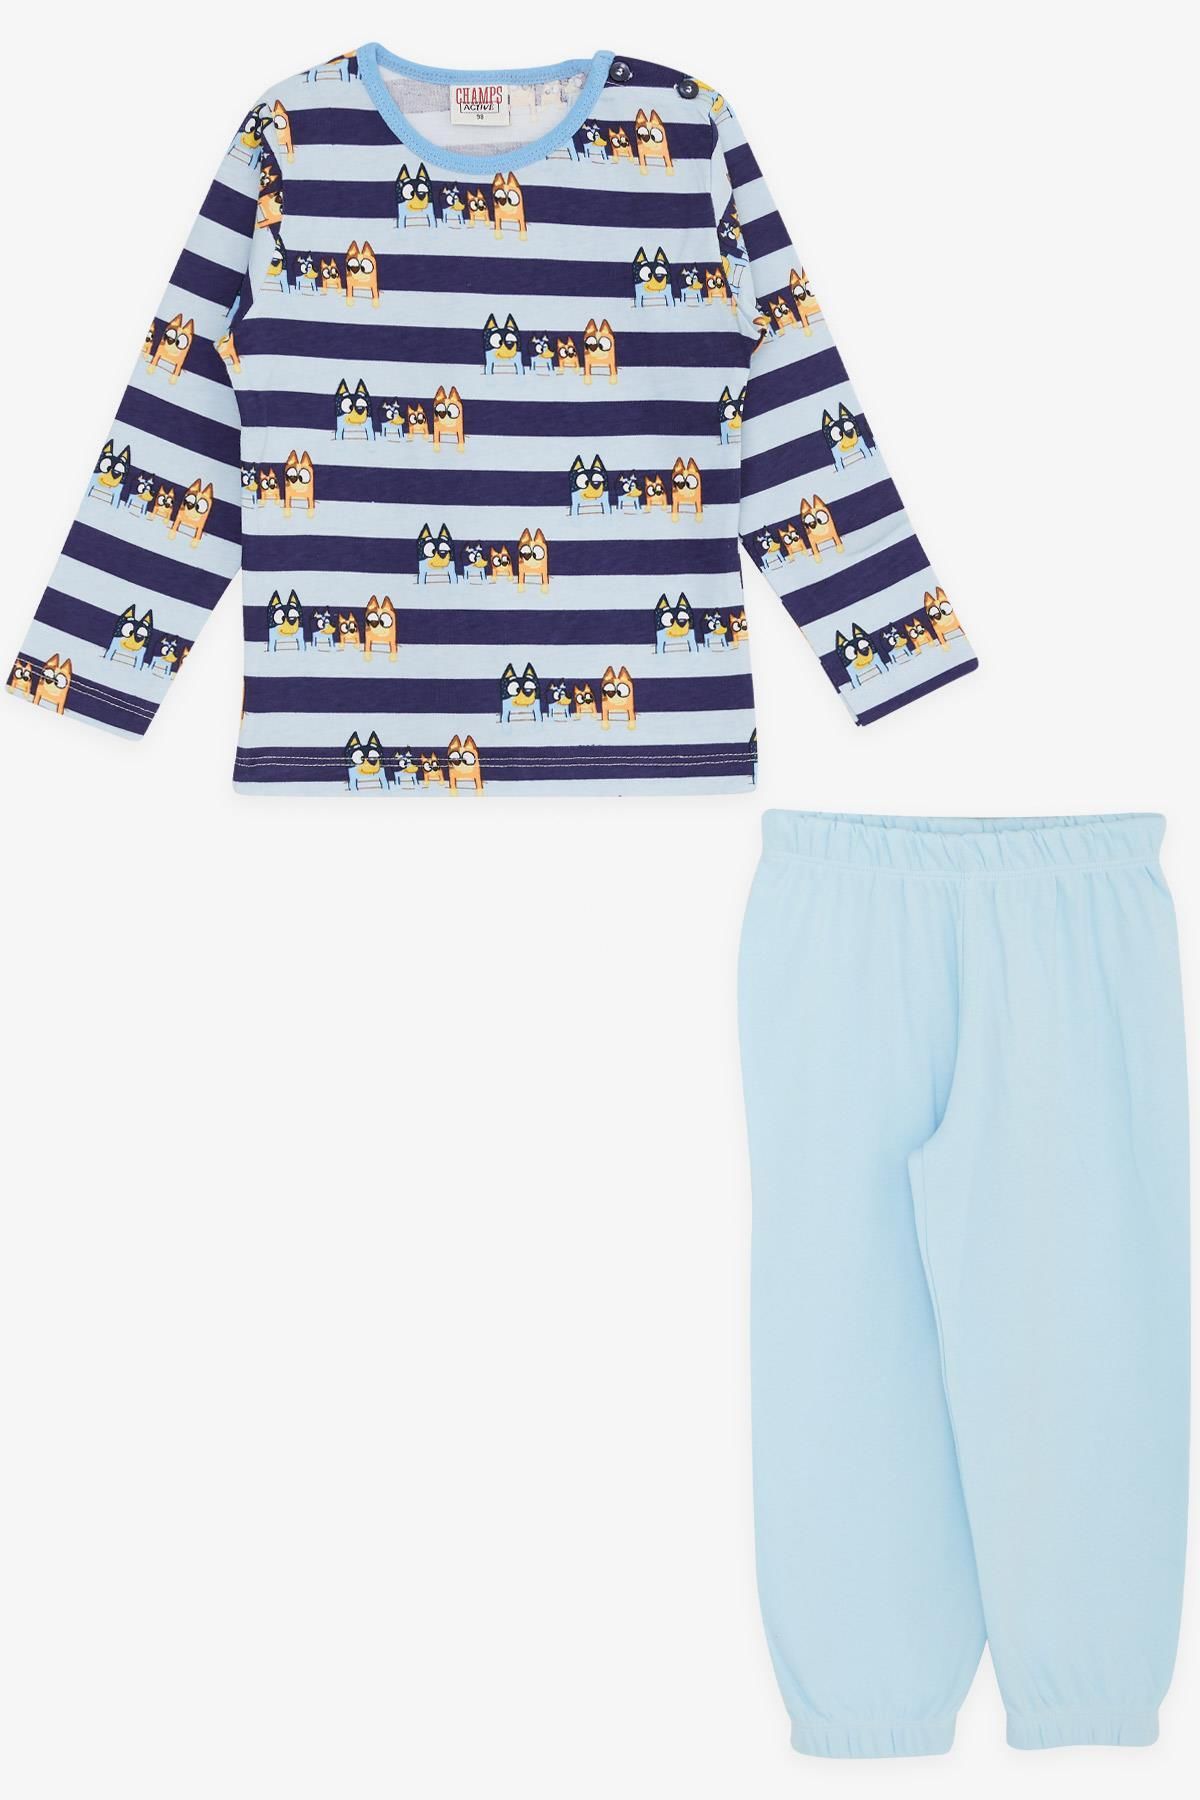 Genel Markalar Erkek Bebek Pijama Takımı Sevimli Köpekcikler Desenli Şeritli 9 Ay-3 Yaş, Mavi